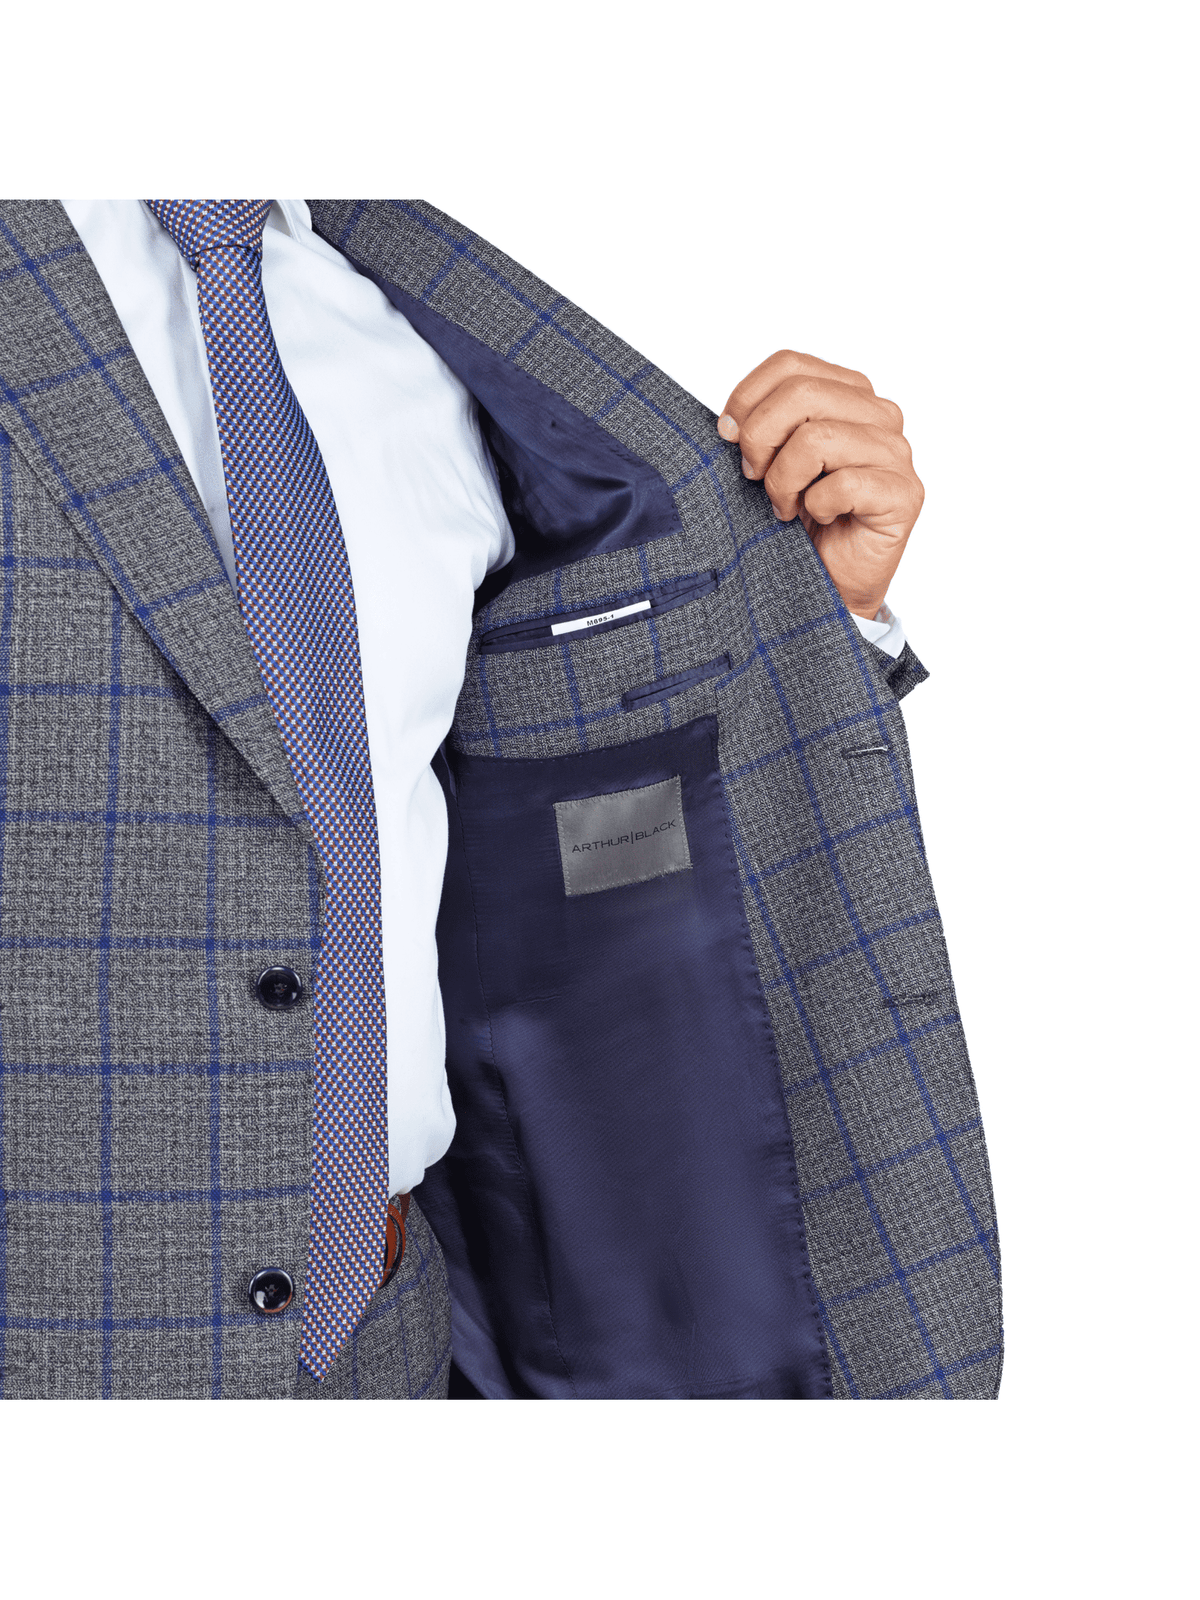 Arthur Black SUITS Arthur Black Slim Fit Grey Textured Marzotto Wool Peak Lapel Suit